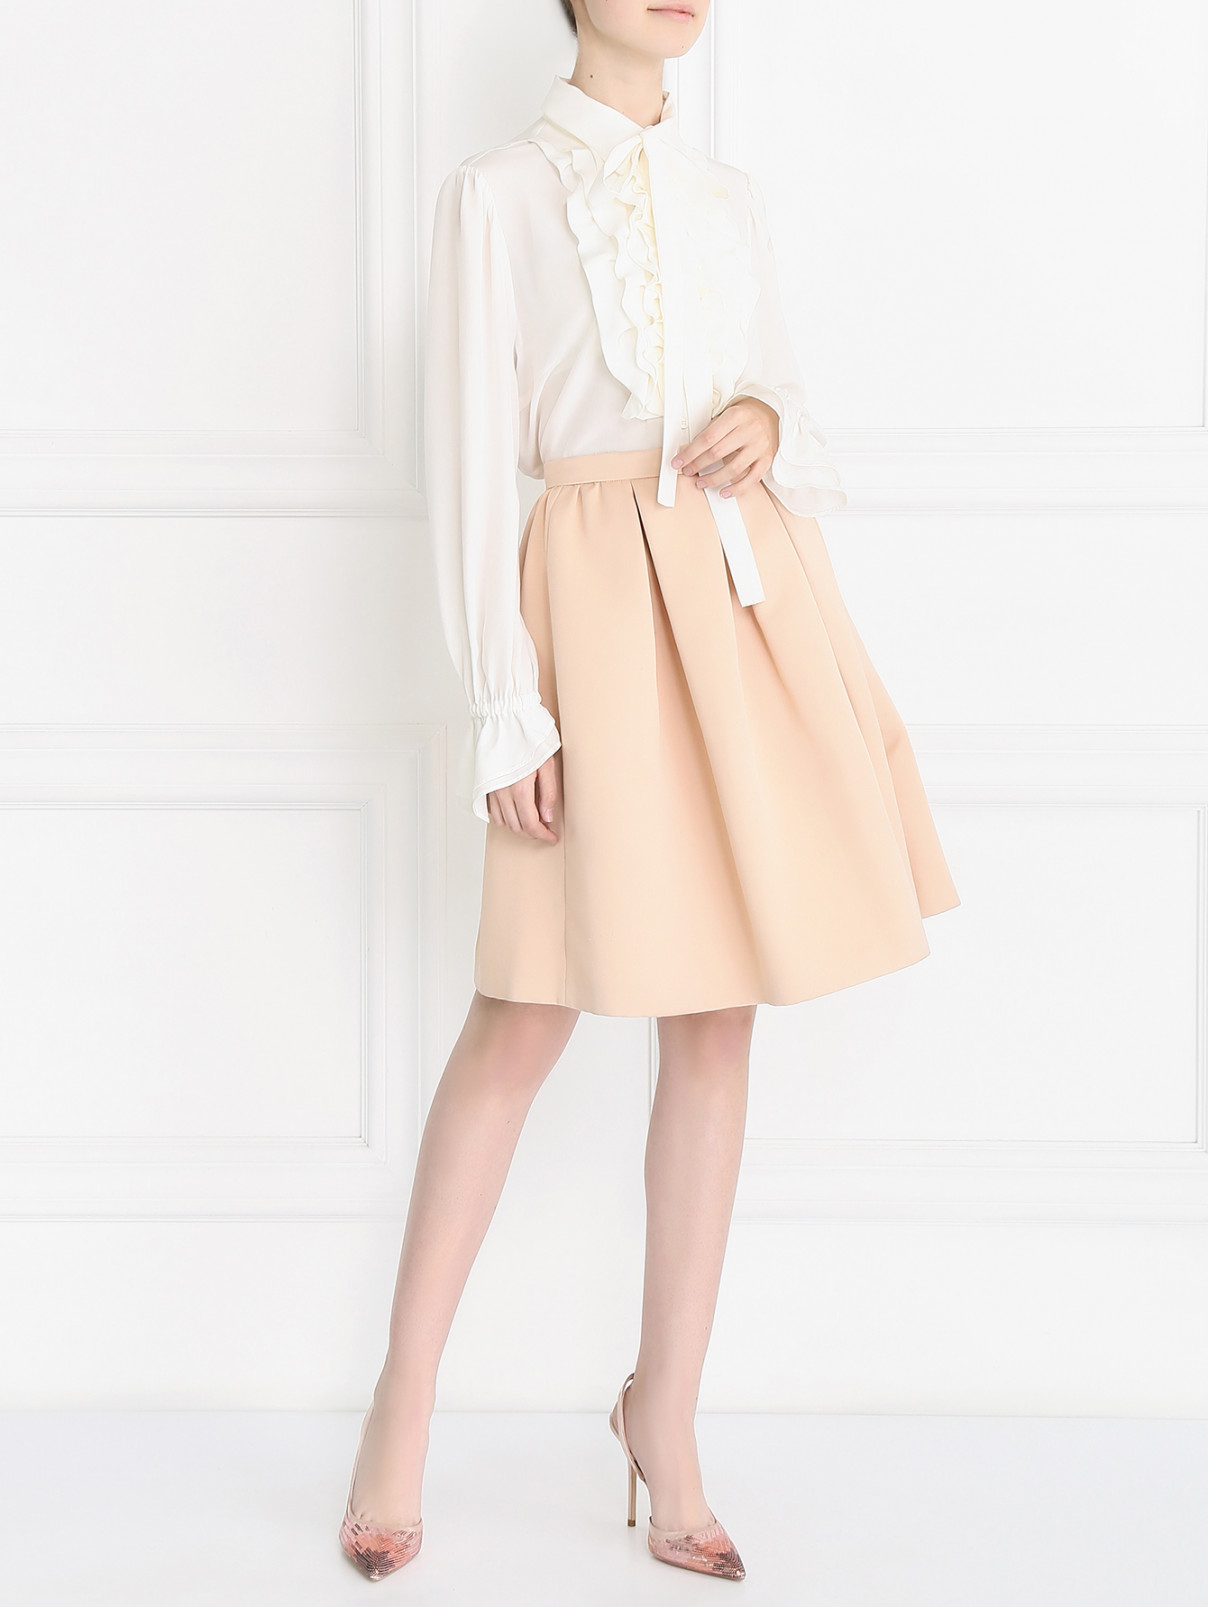 Блуза из шелка с жабо Rossella Jardini  –  Модель Общий вид  – Цвет:  Белый